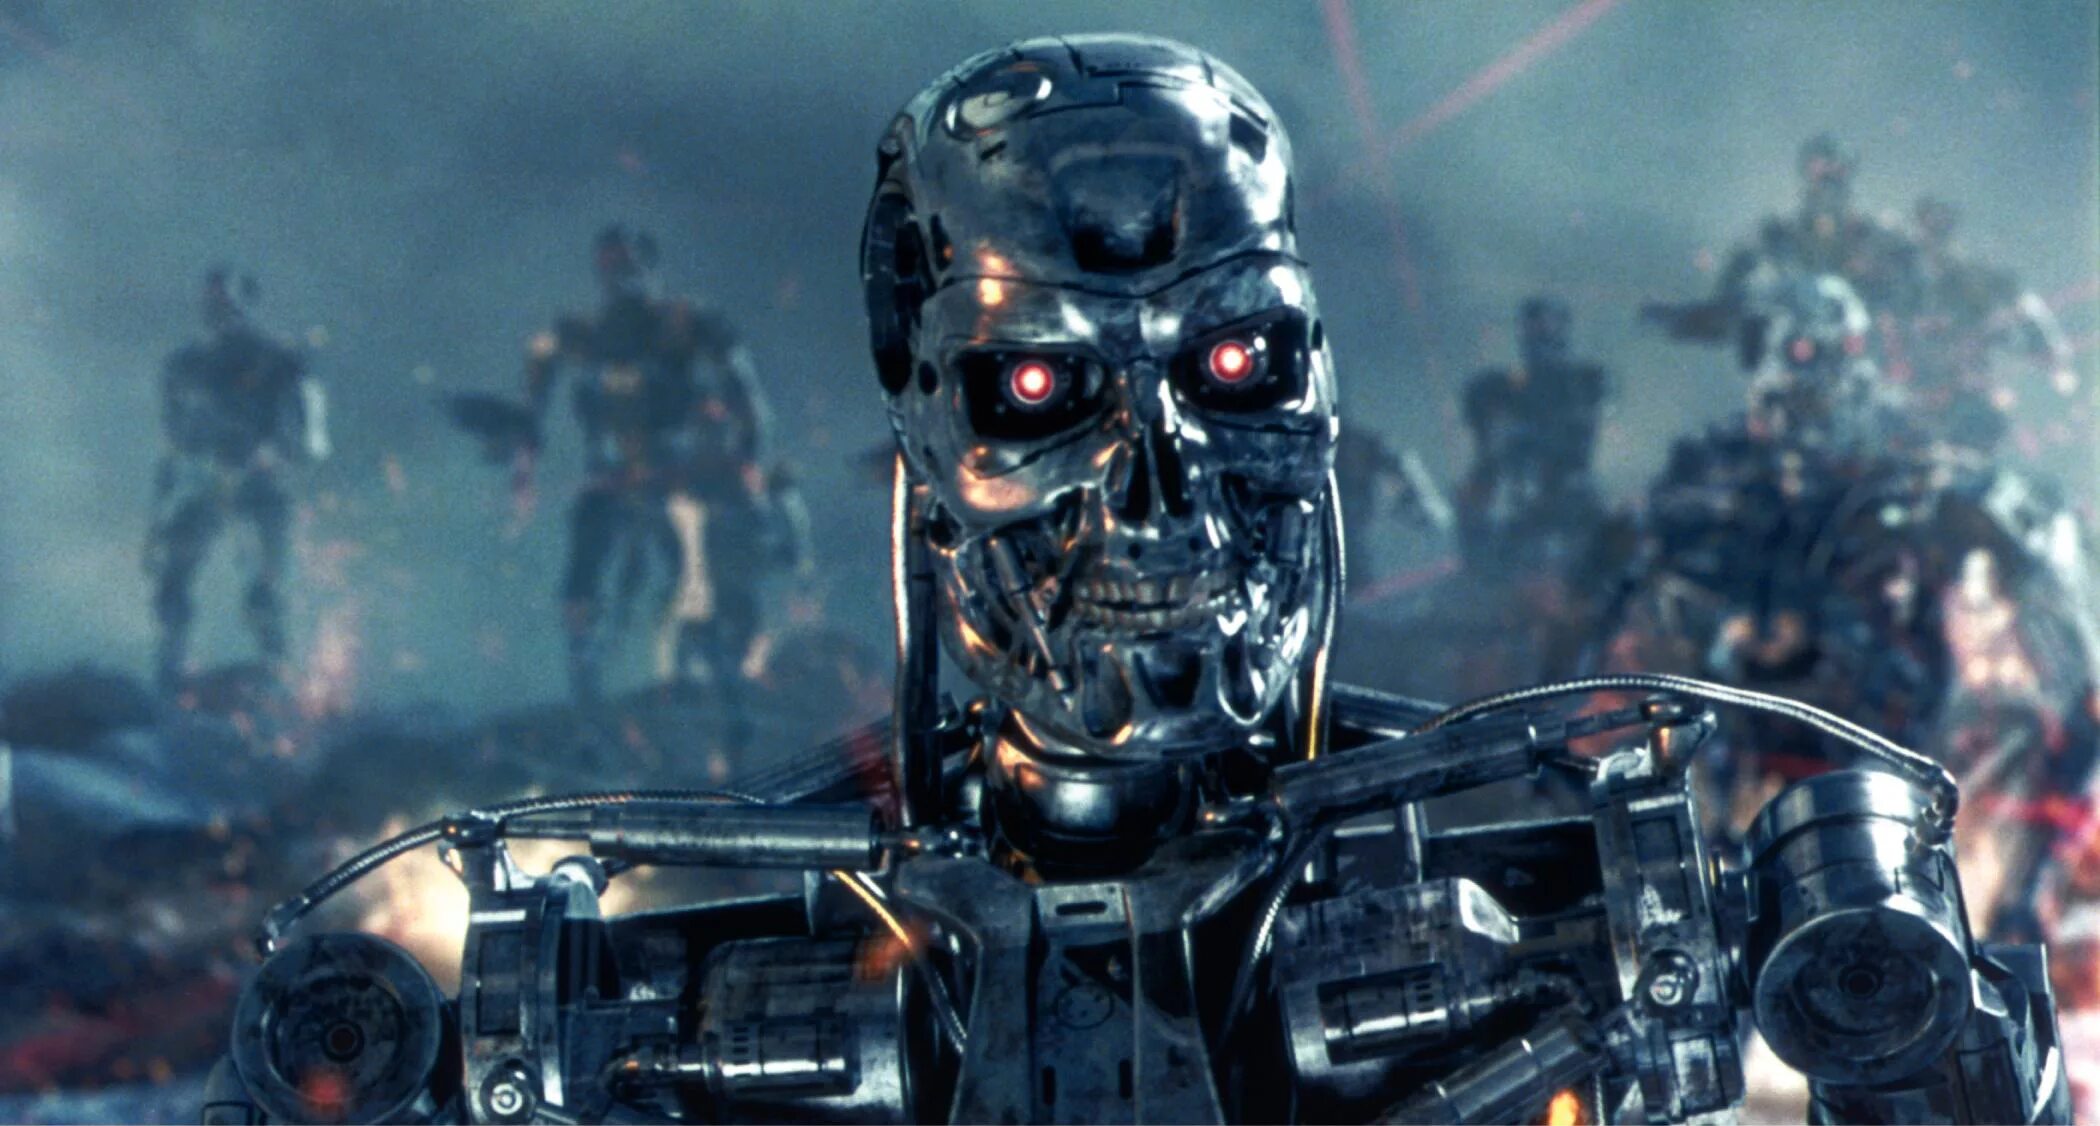 Terminators терминаторы. Скайнет Терминатор роботы. Терминатор 3 восстание машин Скайнет. Терминатор 3 Скайнет.